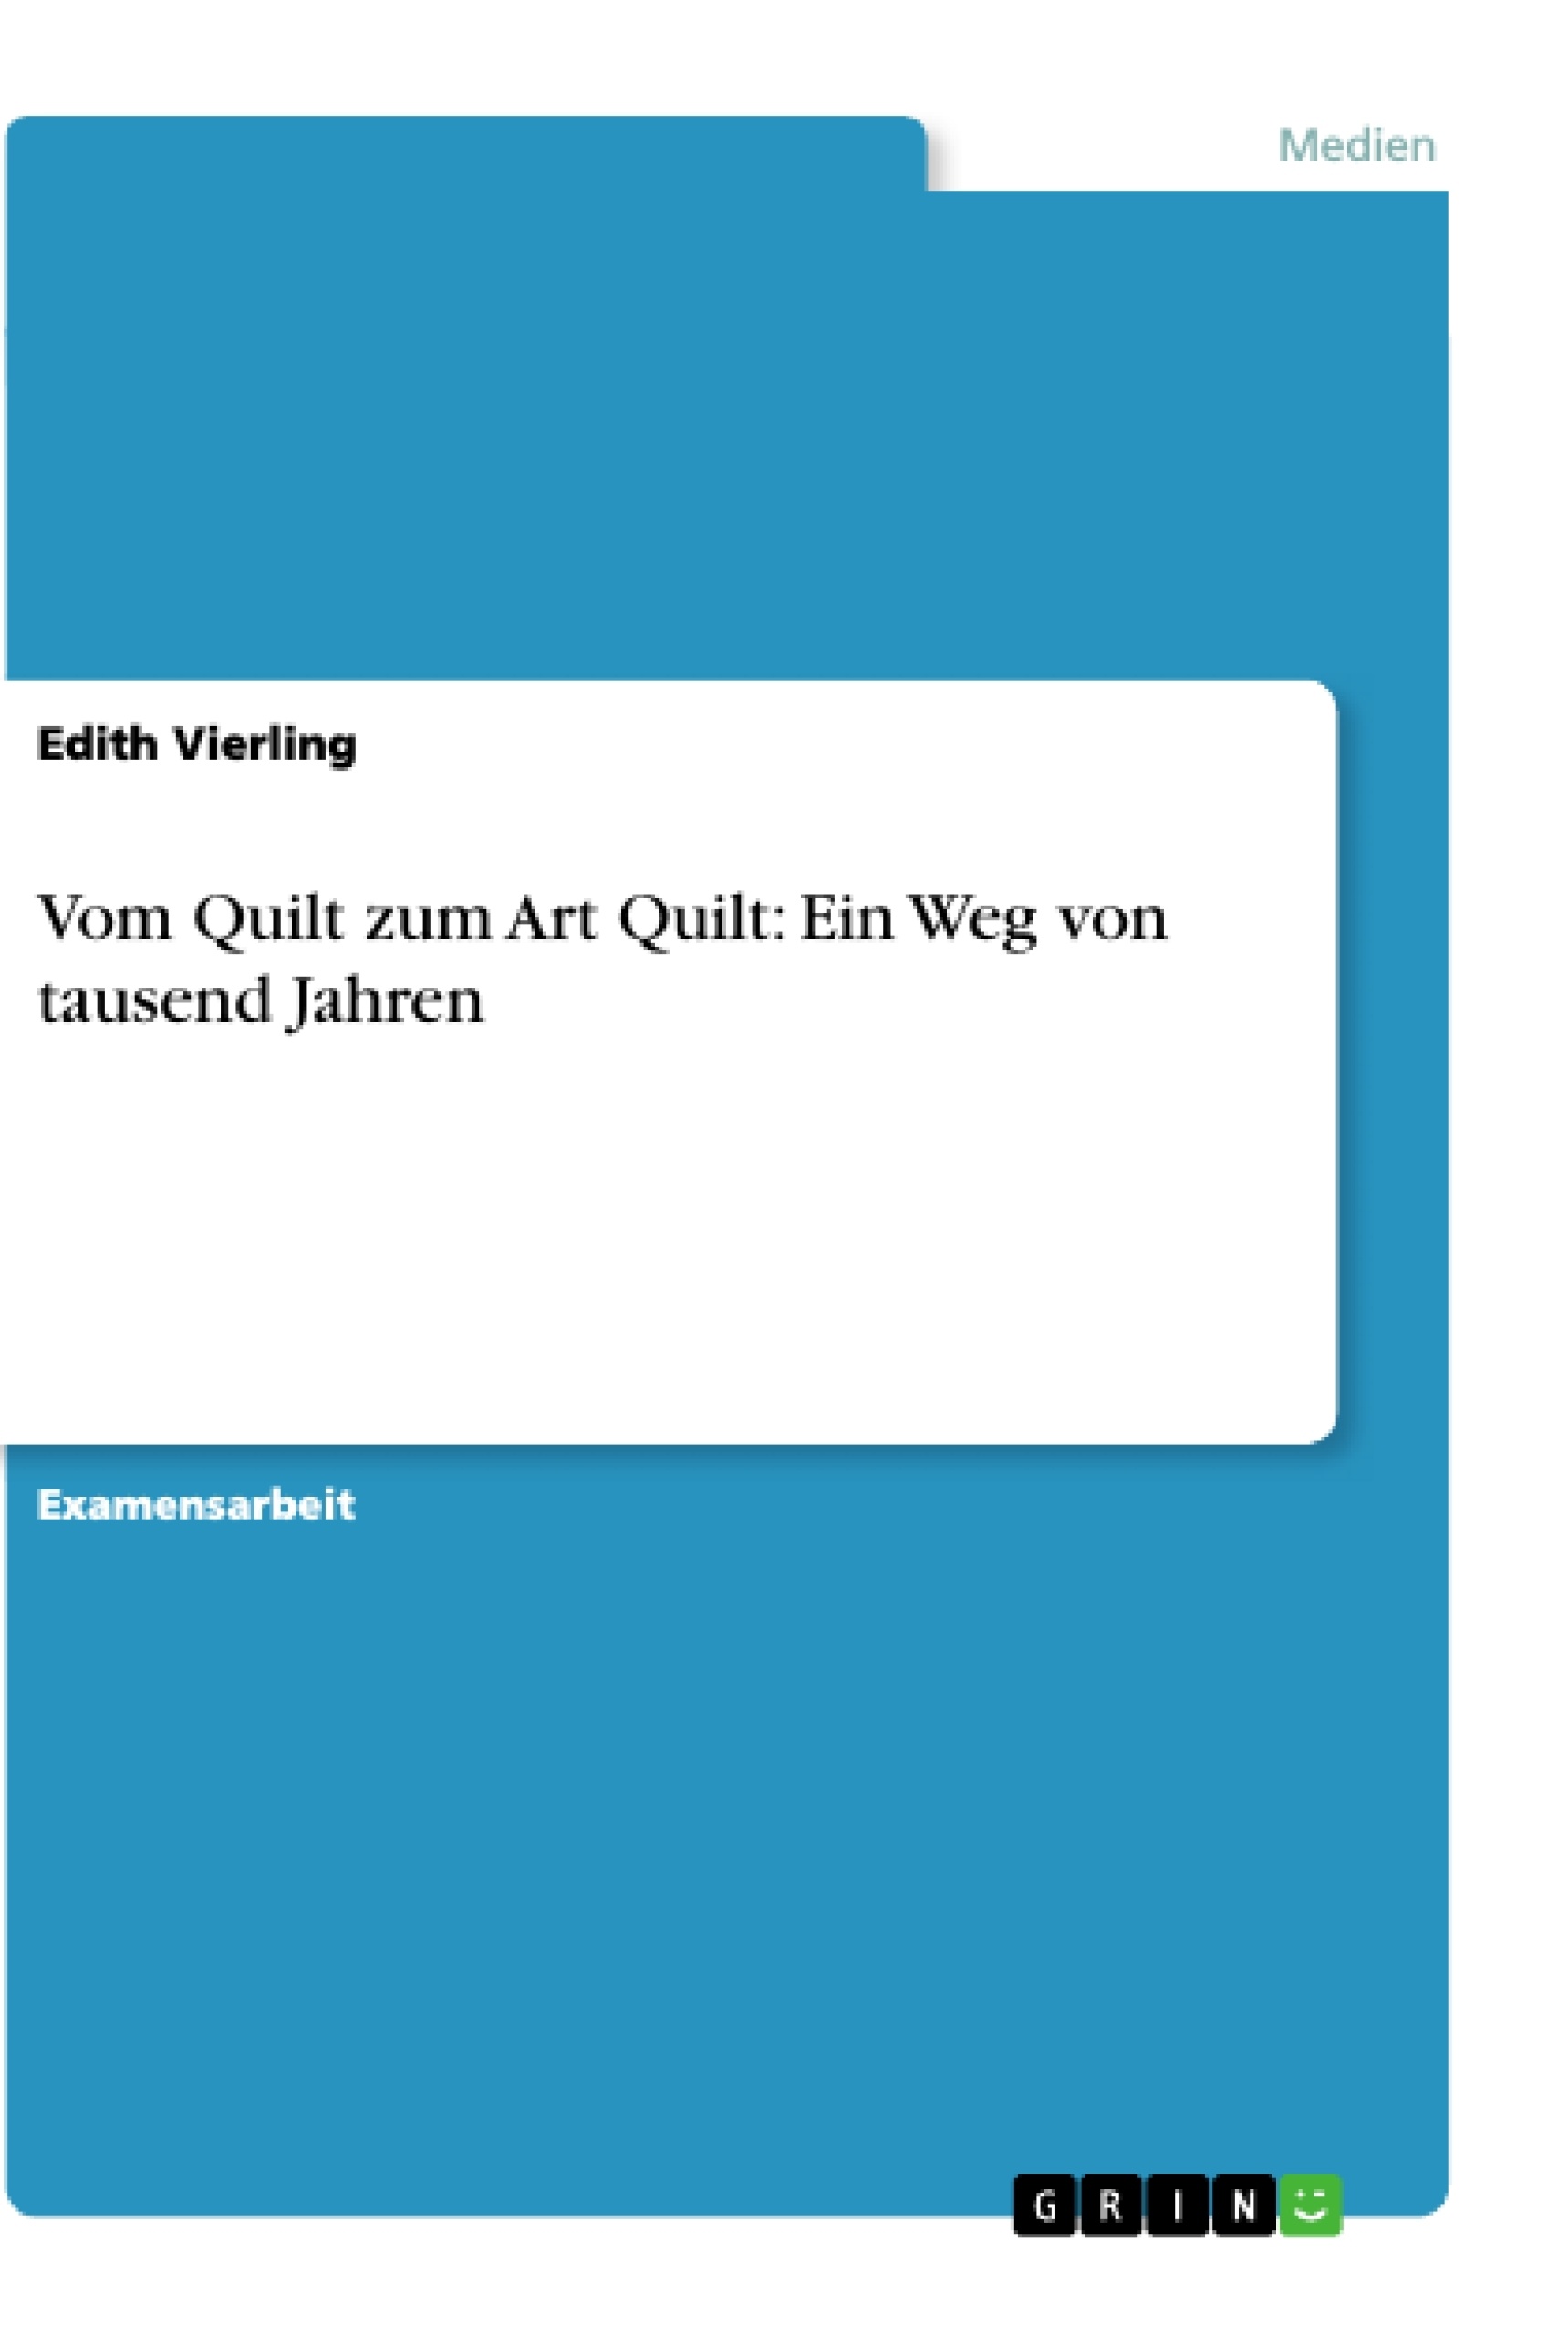 Título: Vom Quilt zum Art Quilt: Ein Weg von tausend Jahren